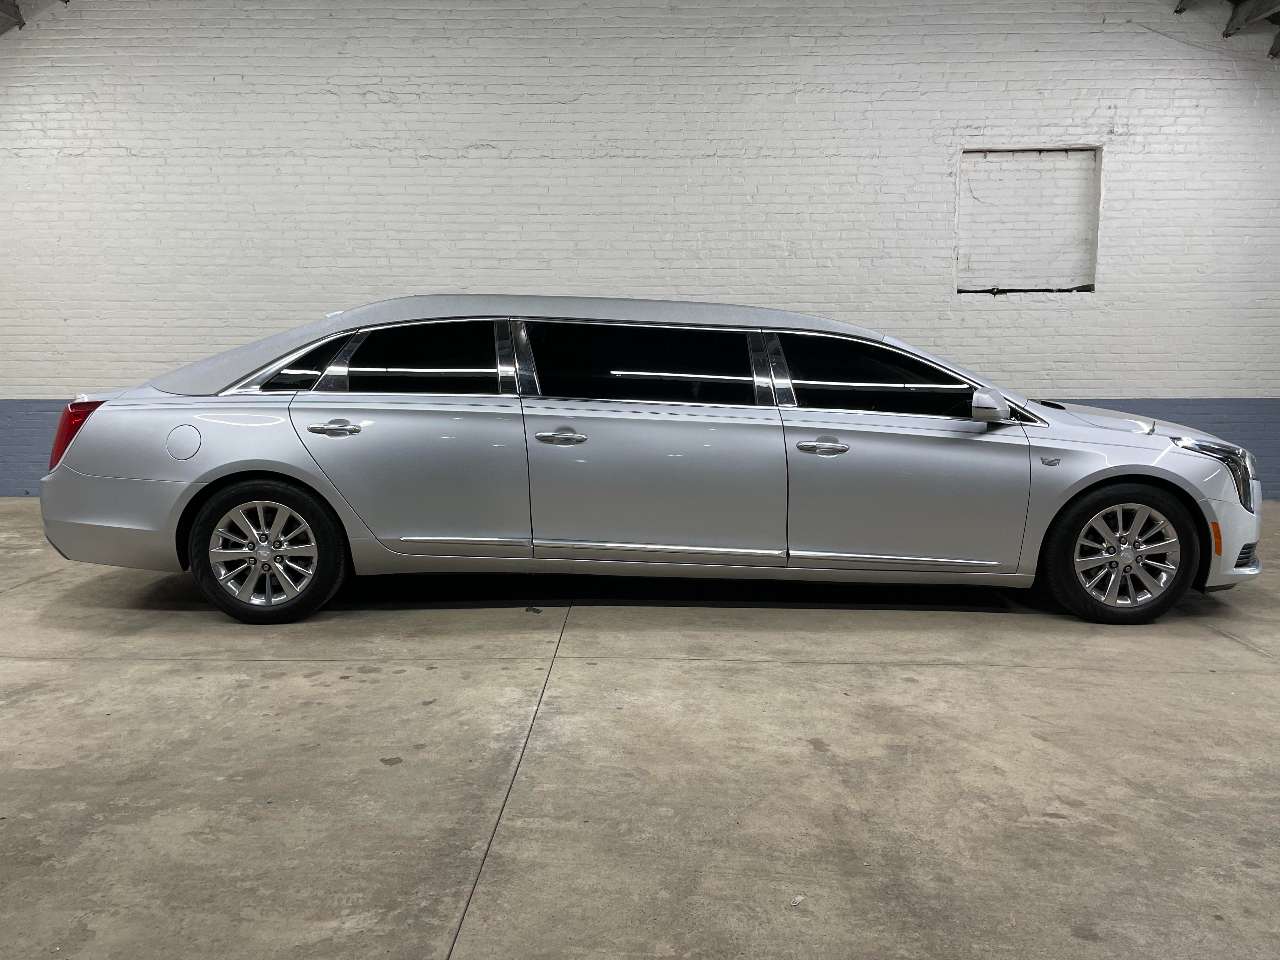 2019 Cadillac Platinum 6 Door Limousine 1690463662105